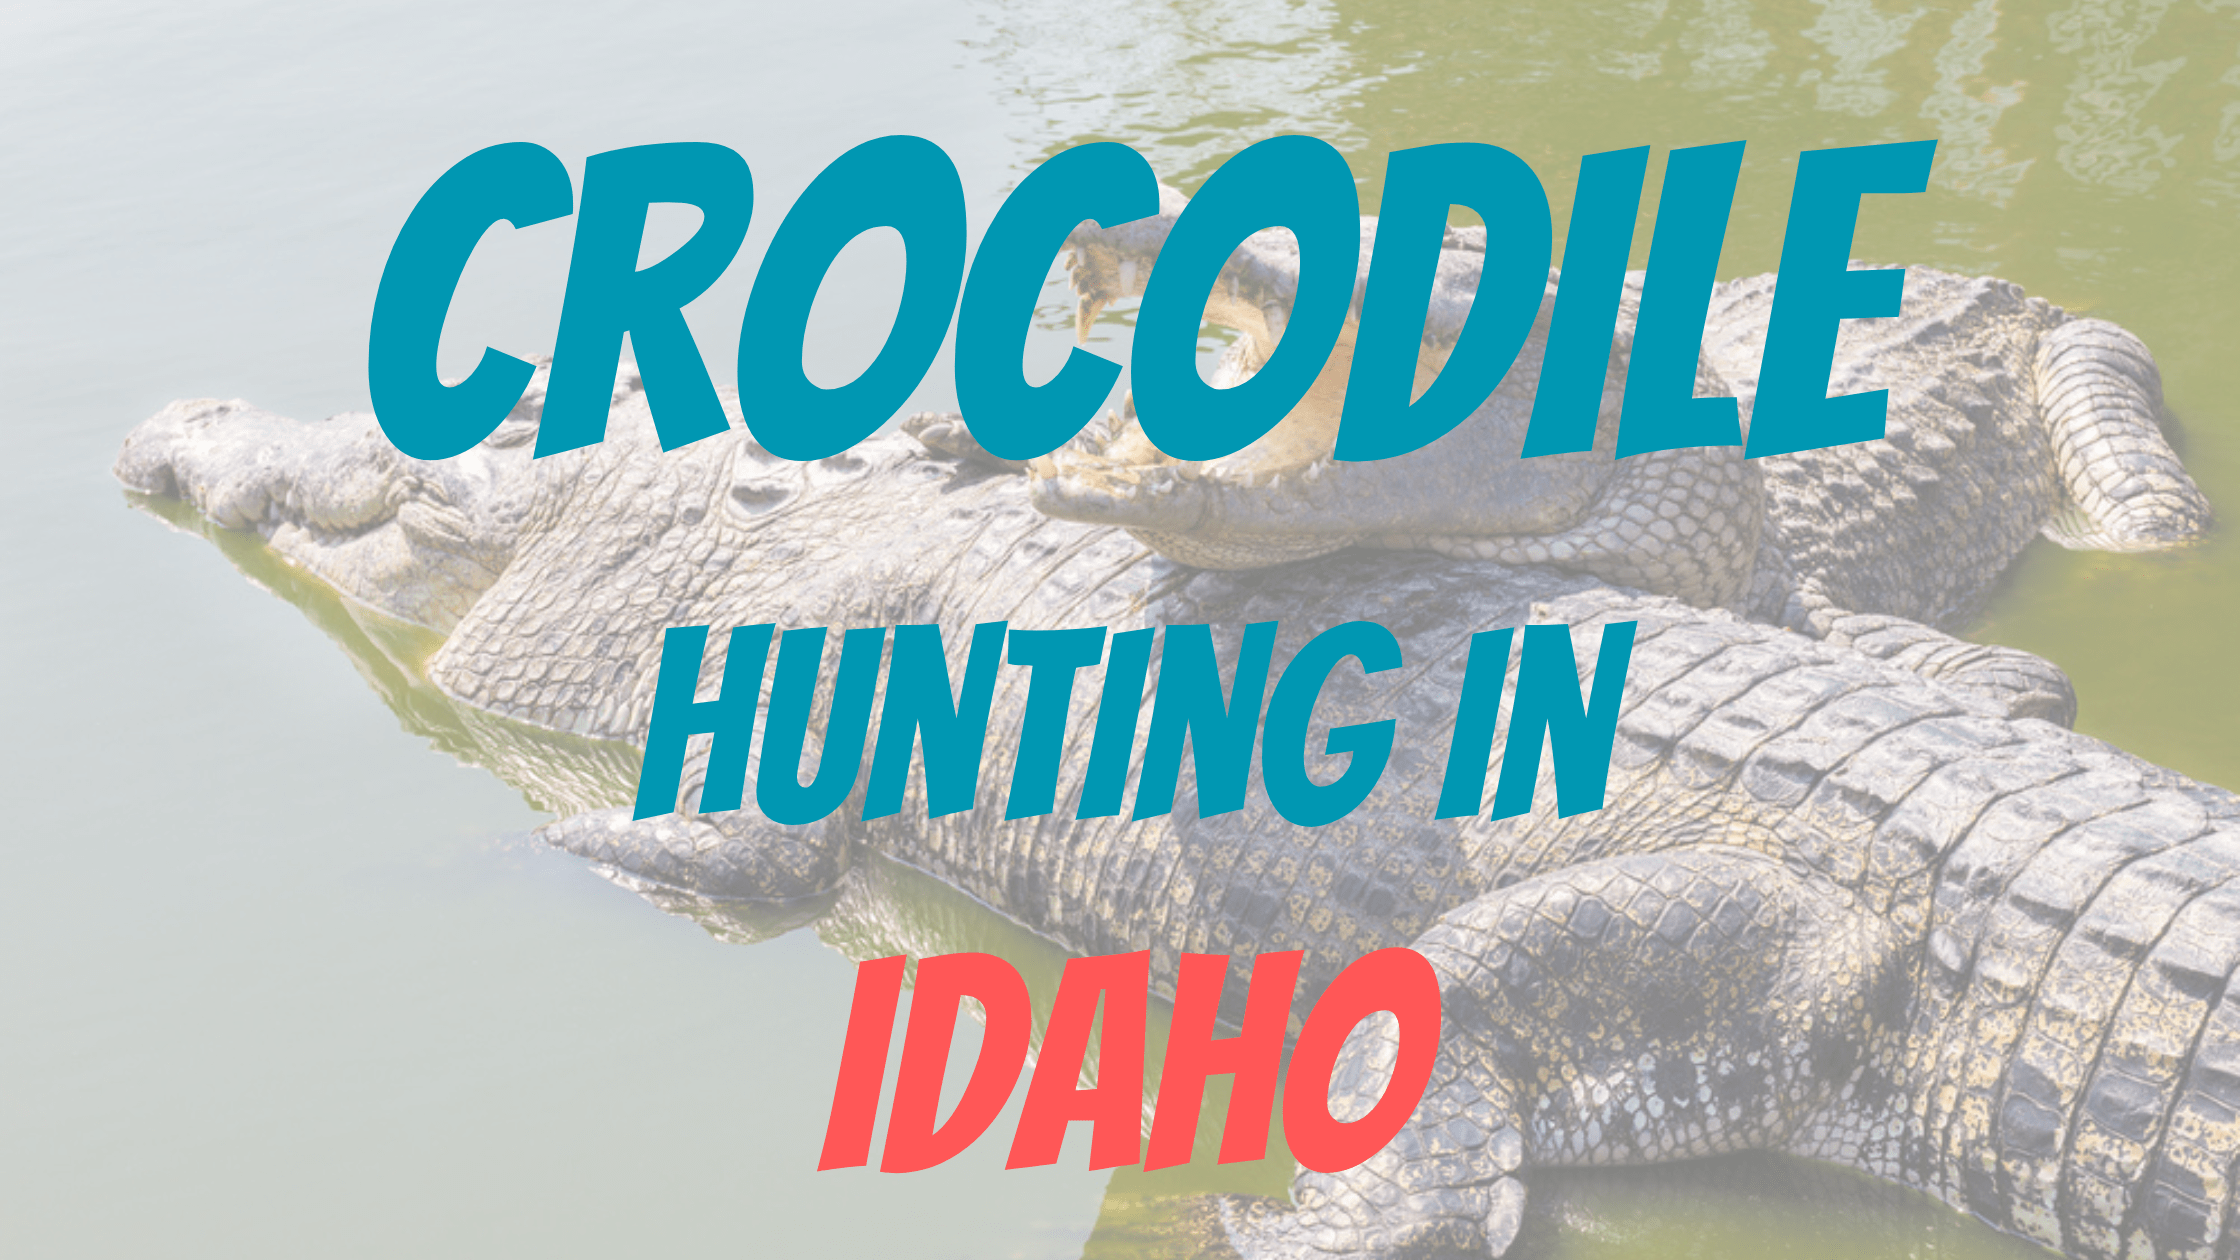 Crocodile Hunting in Idaho